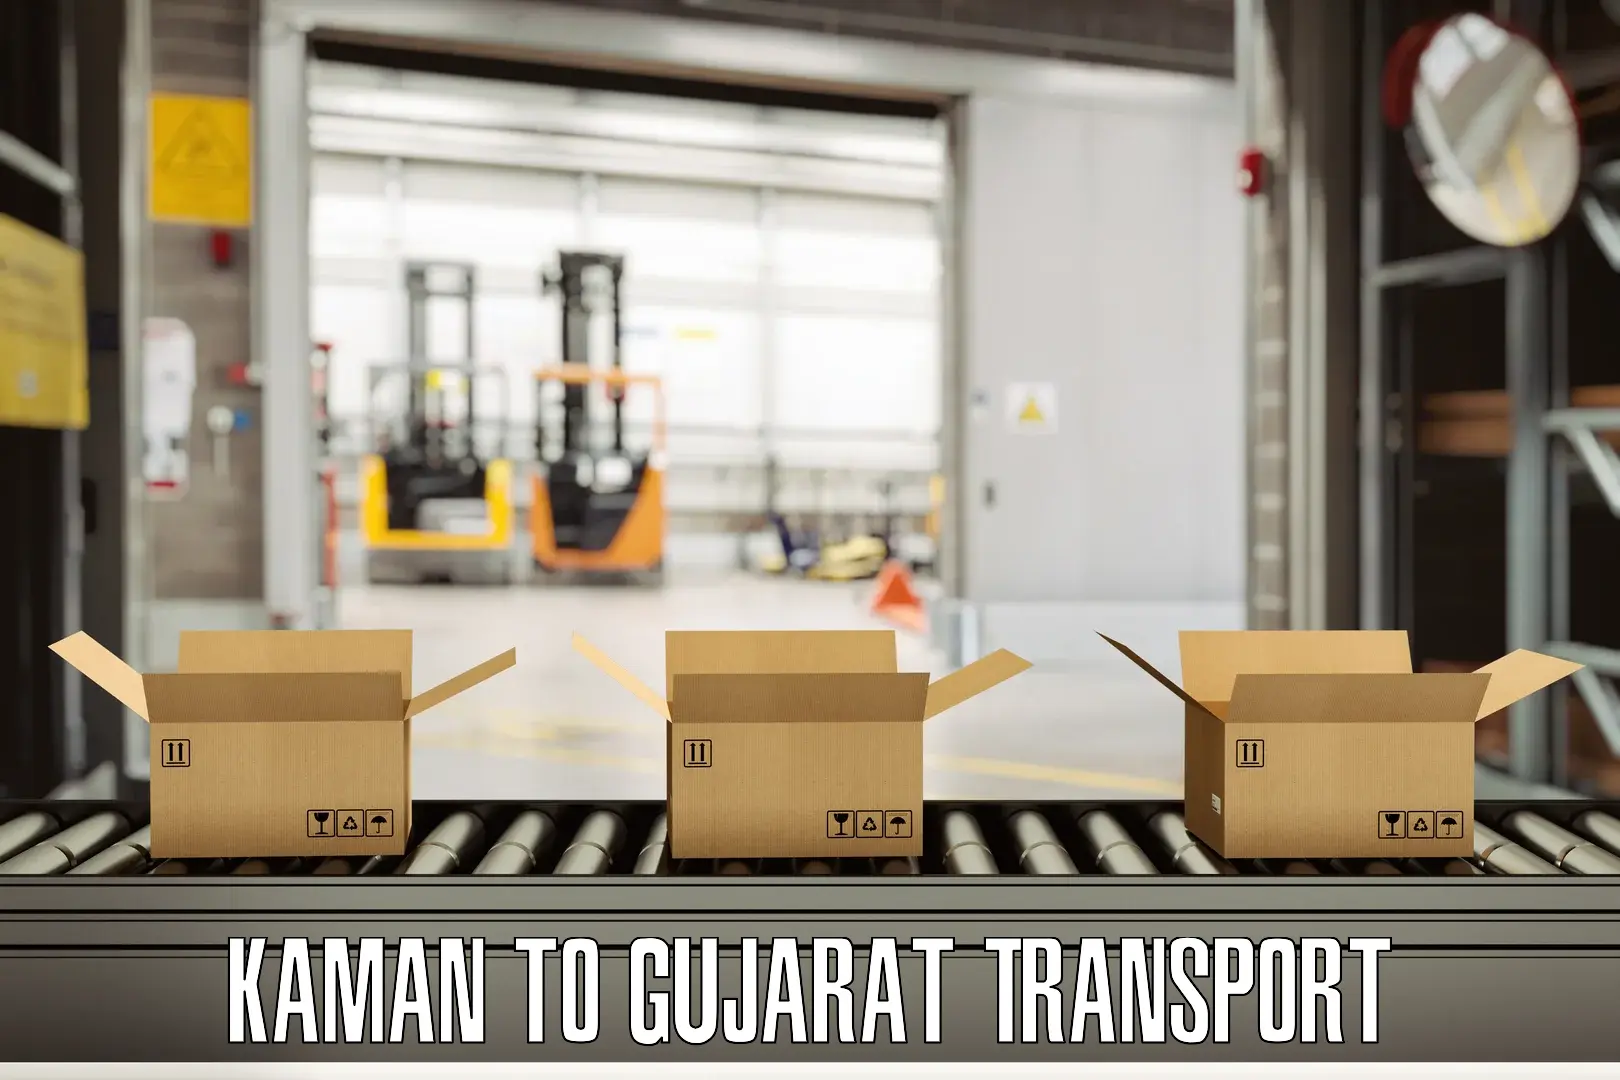 Pick up transport service in Kaman to Patan Gujarat